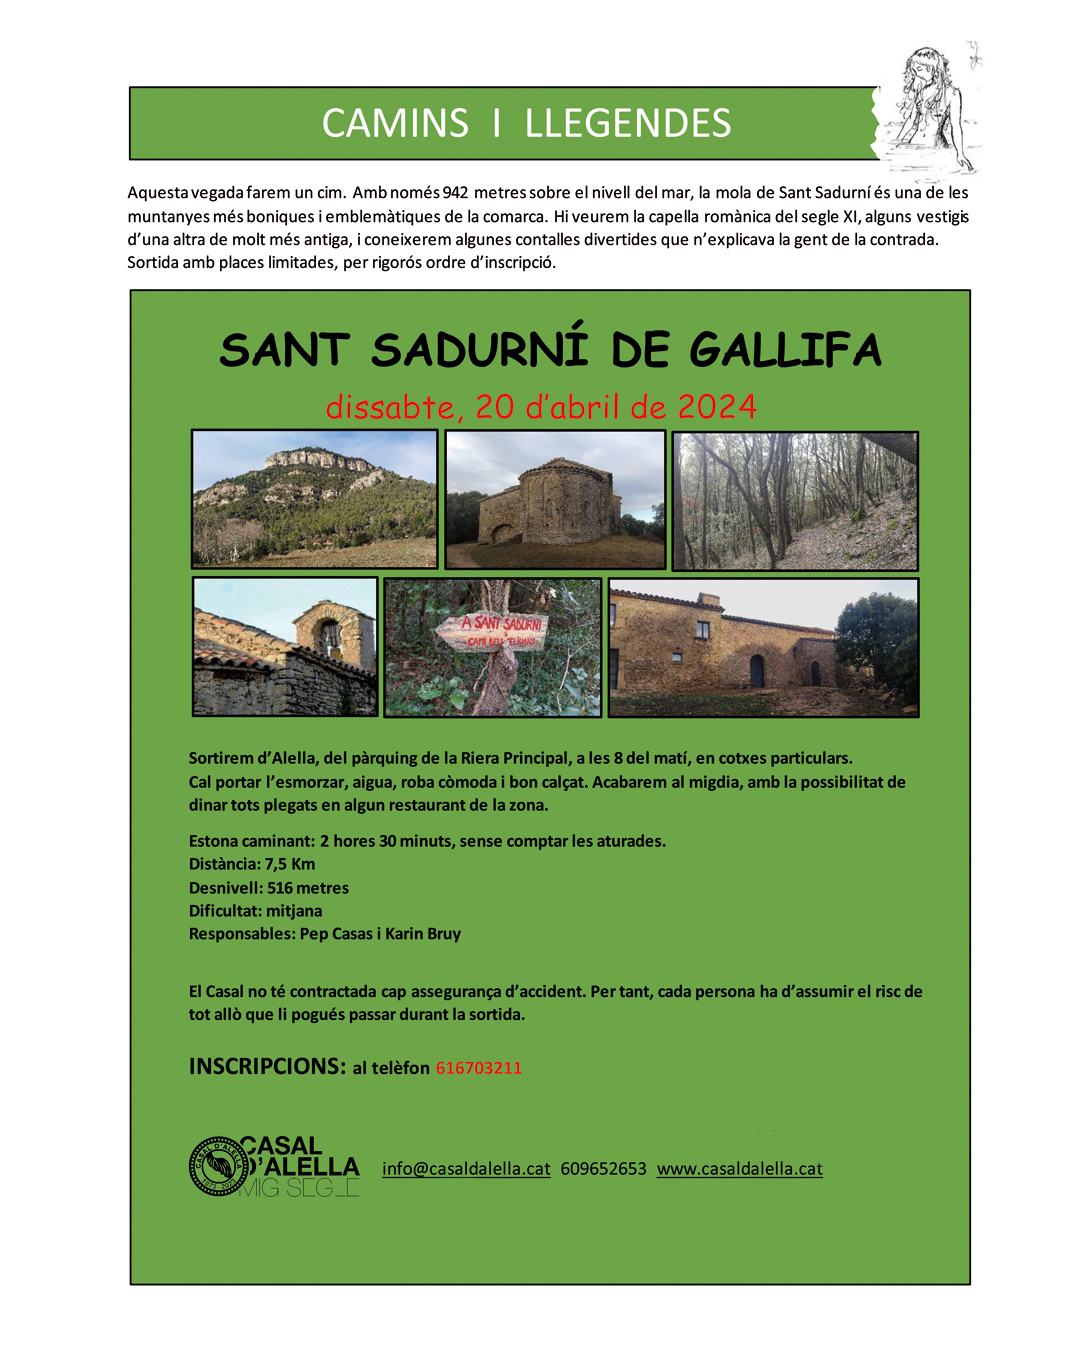 Camins i llegendes: Sant Sadurní de Gallifa